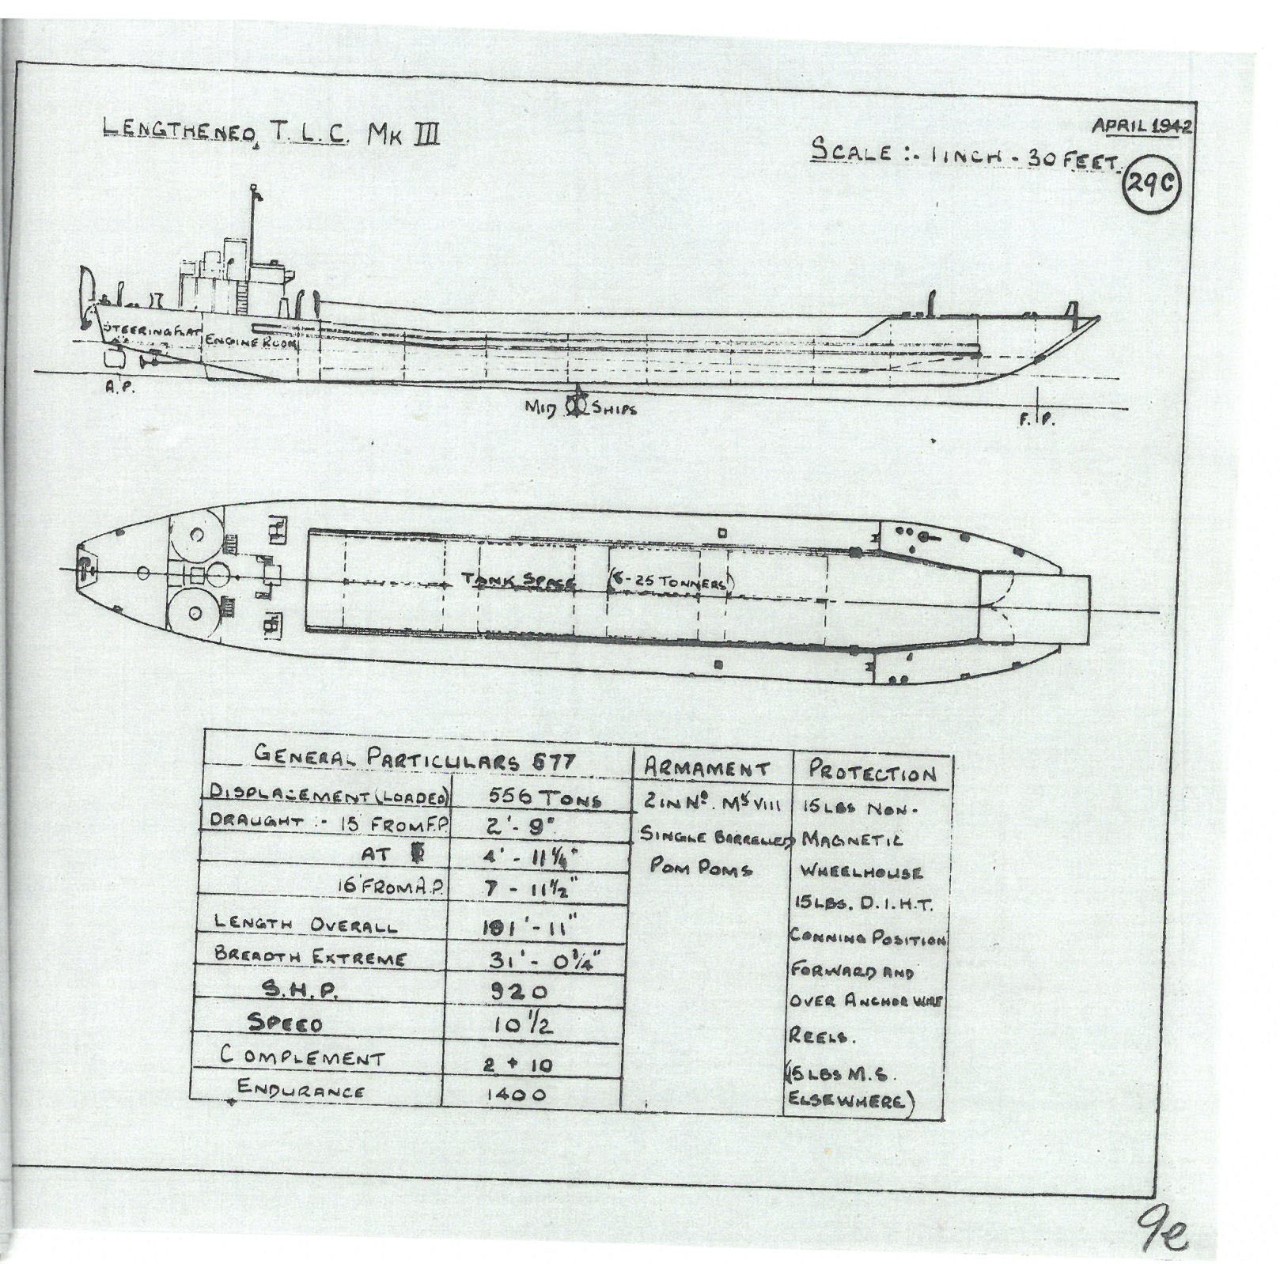 Lengtheneo T.L.C. Mk III